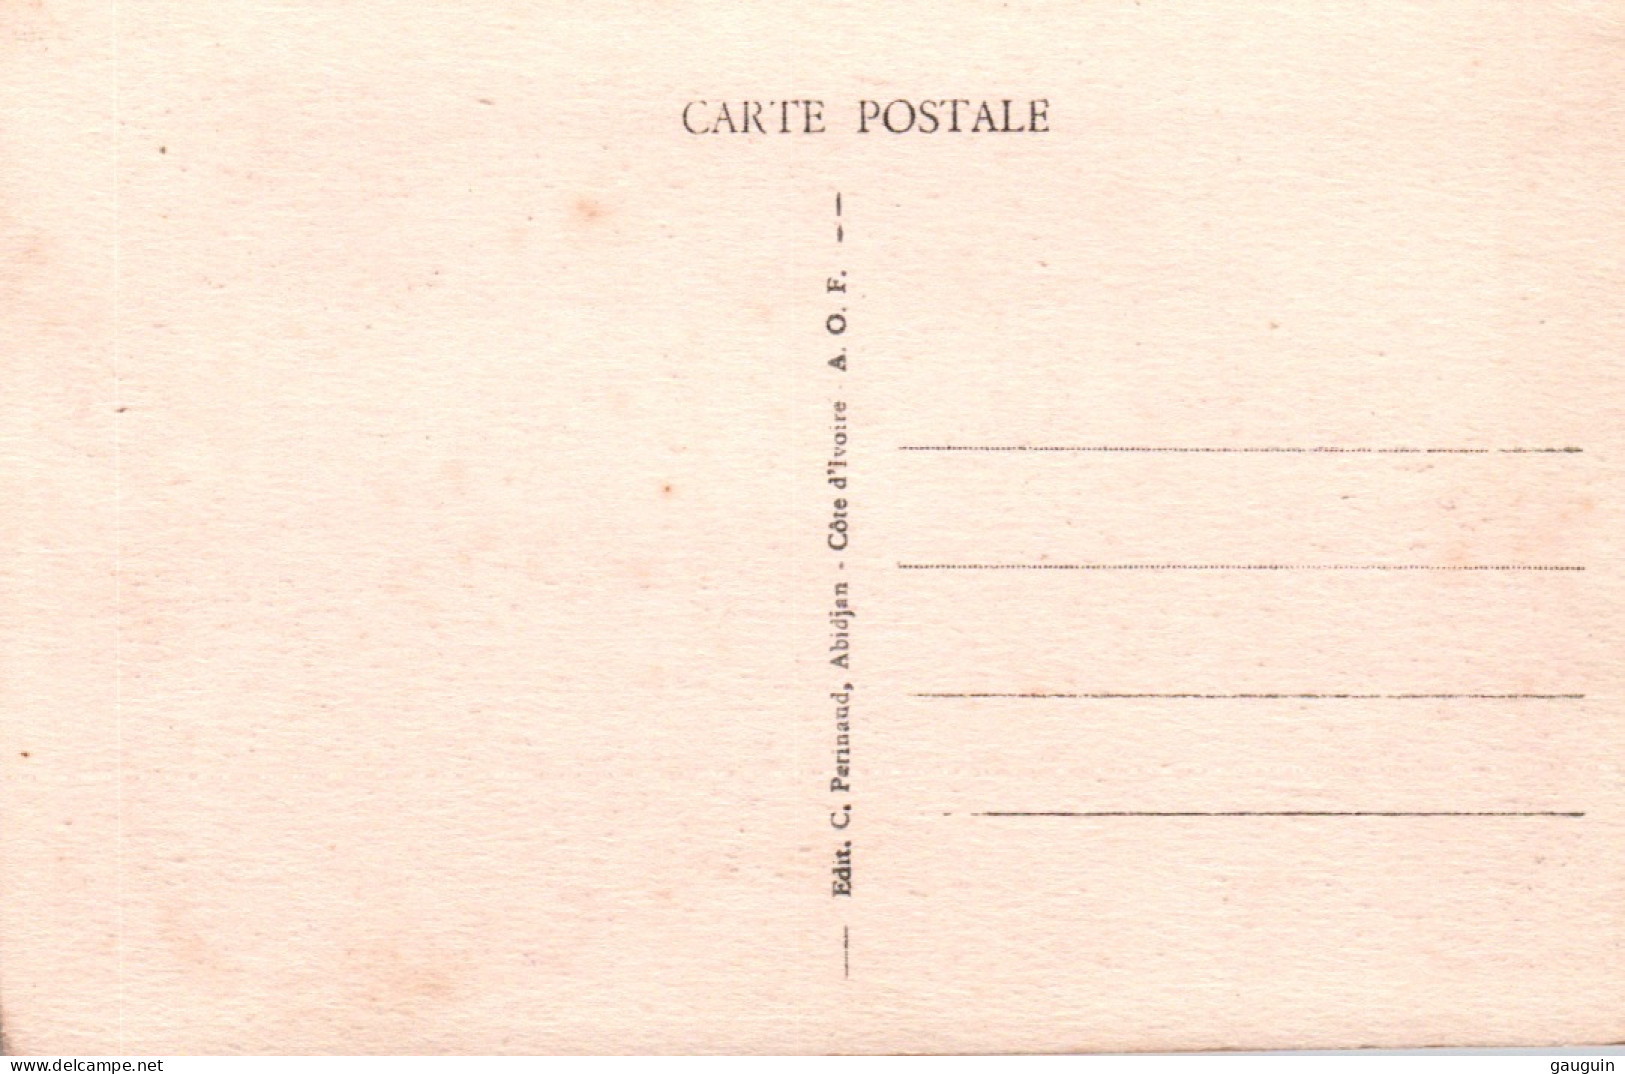 CPA - BOUAKÉ - La Gare - Edition C.Perinaud - Ivory Coast